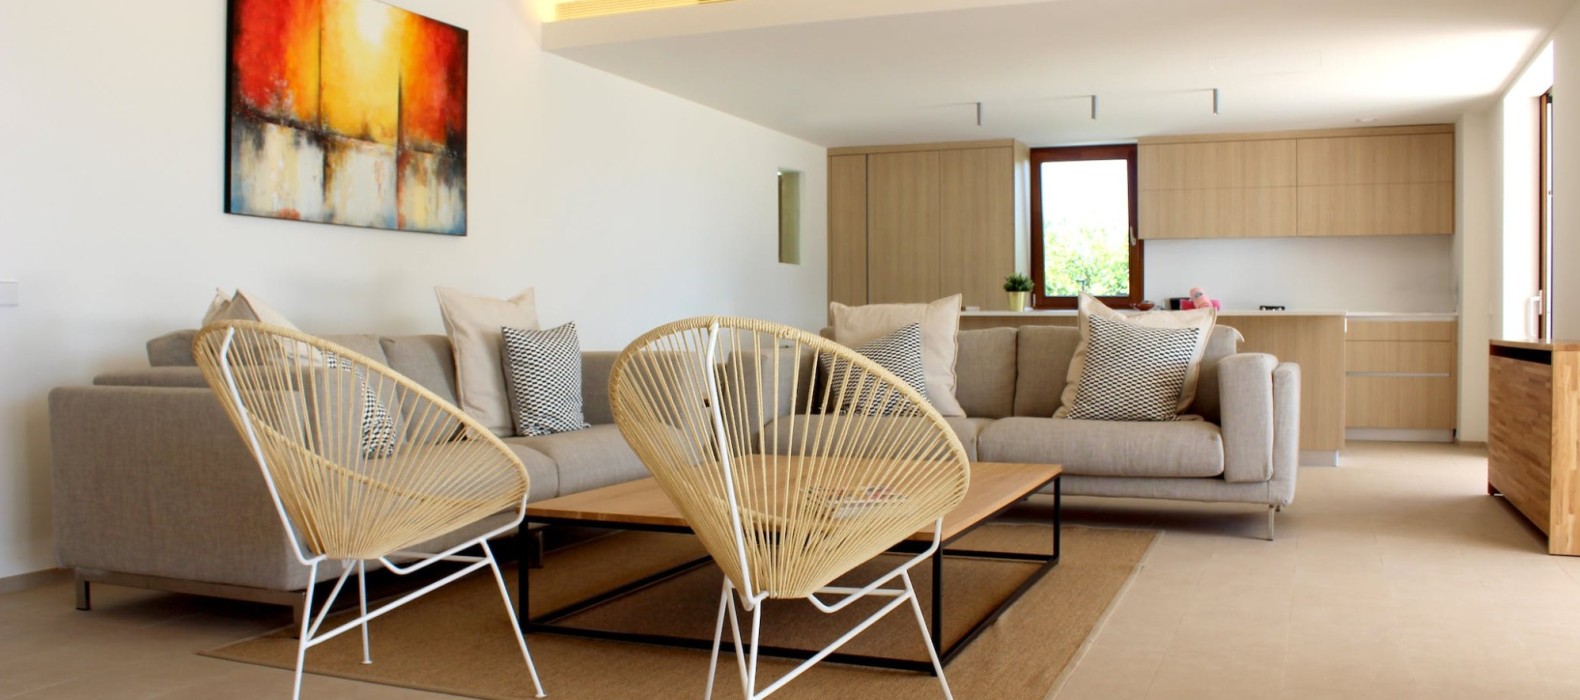 Living room of Villa Can Euphoria in Mallorca